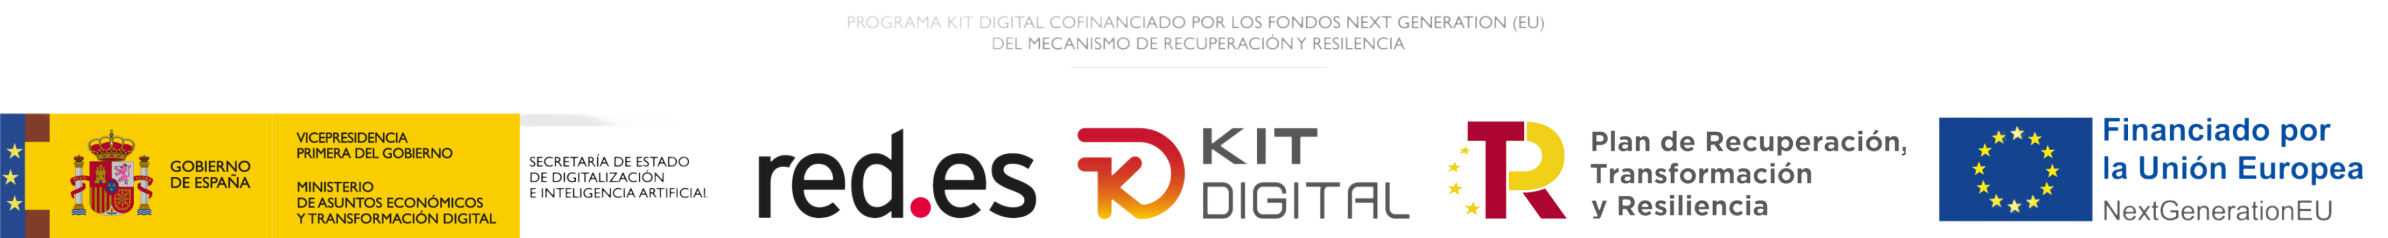 Logo Kit Digital